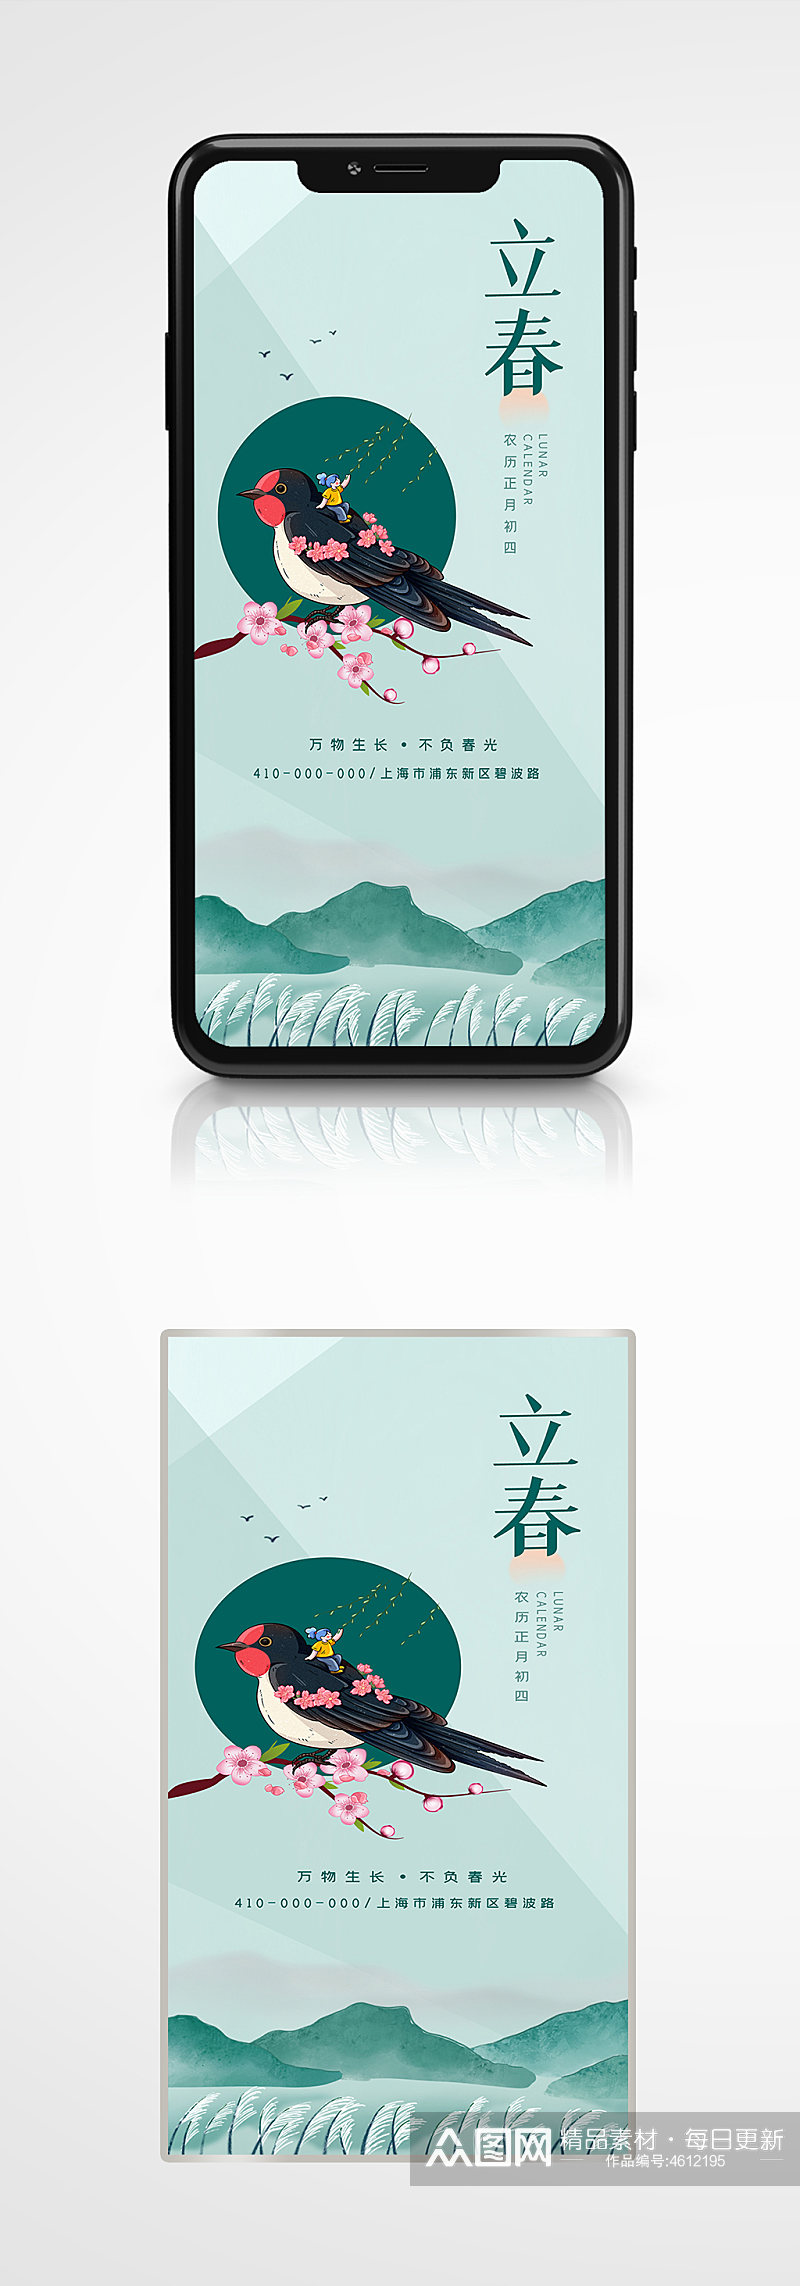 立春创意合成手机海报传统中国风节气素材